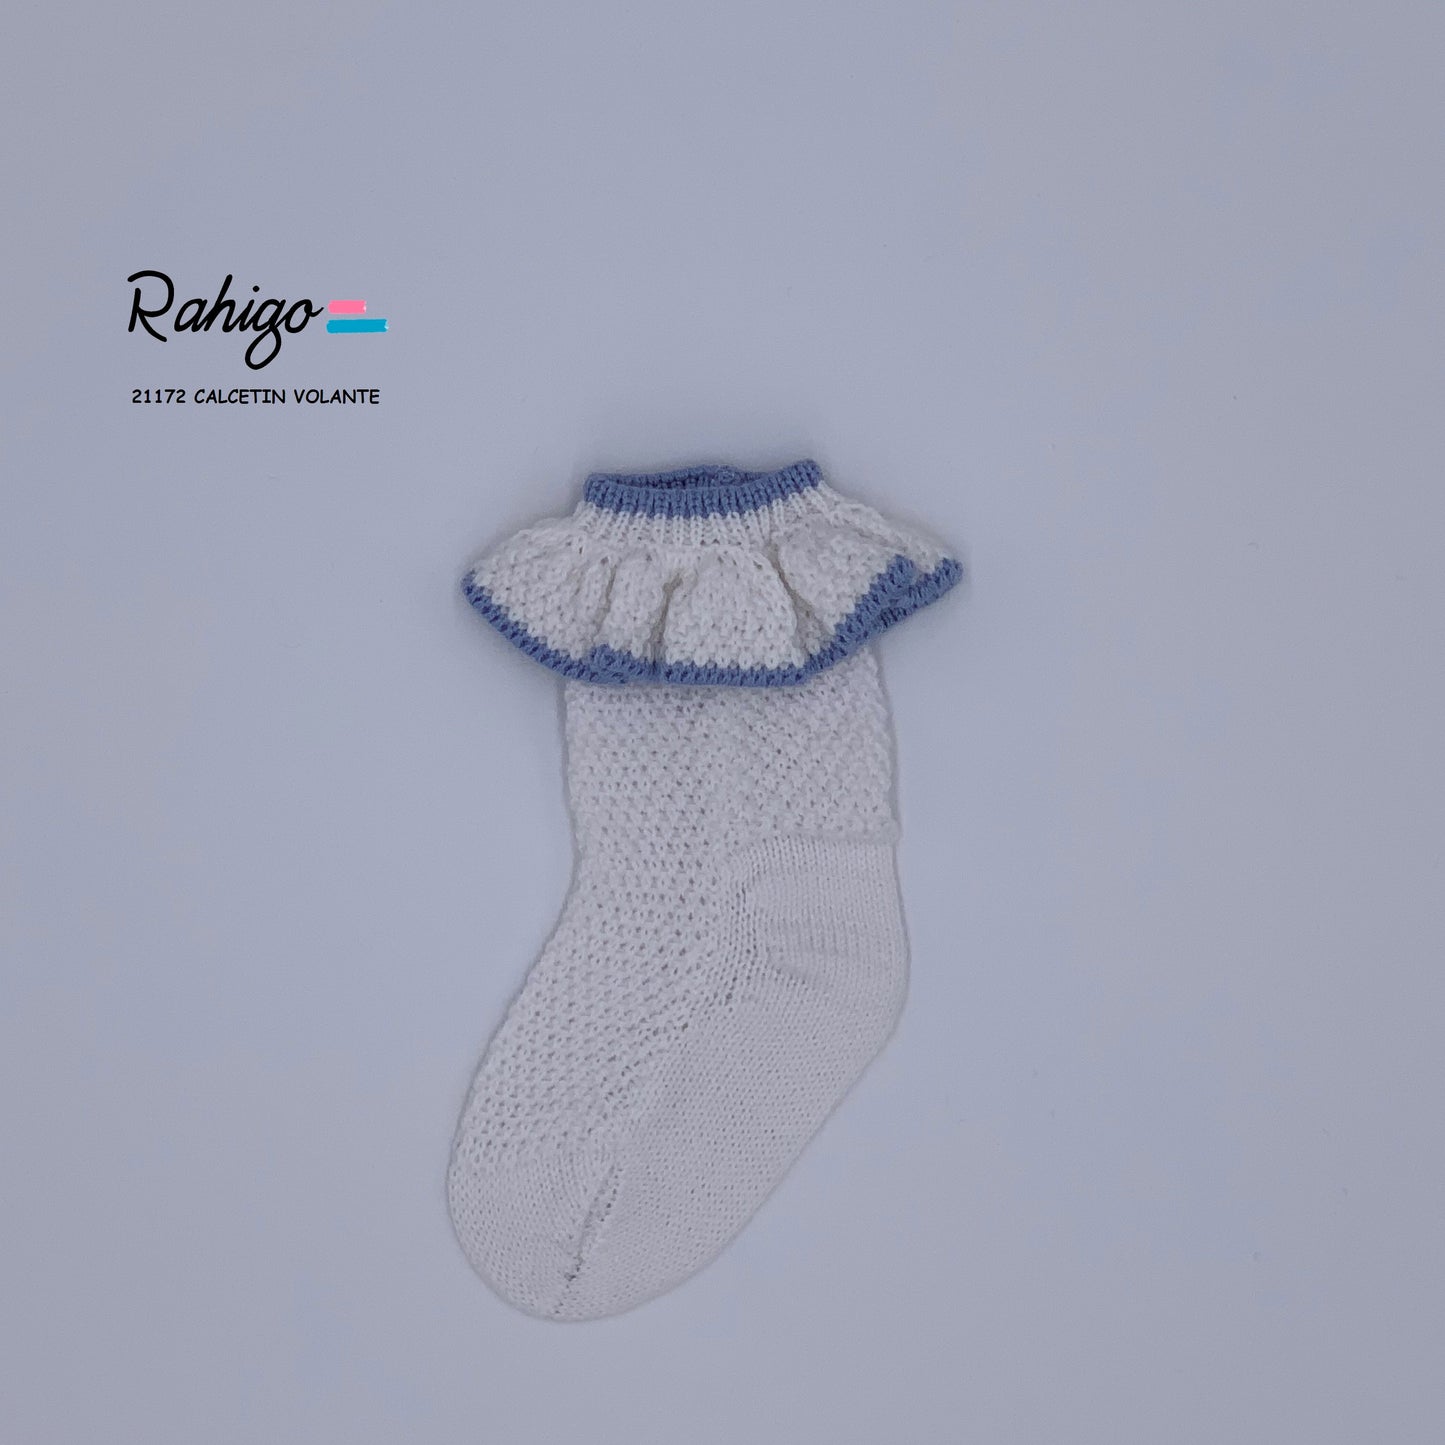 RAHIGO Sky Blue & White Girls Ankle Socks - NON RETURNABLE